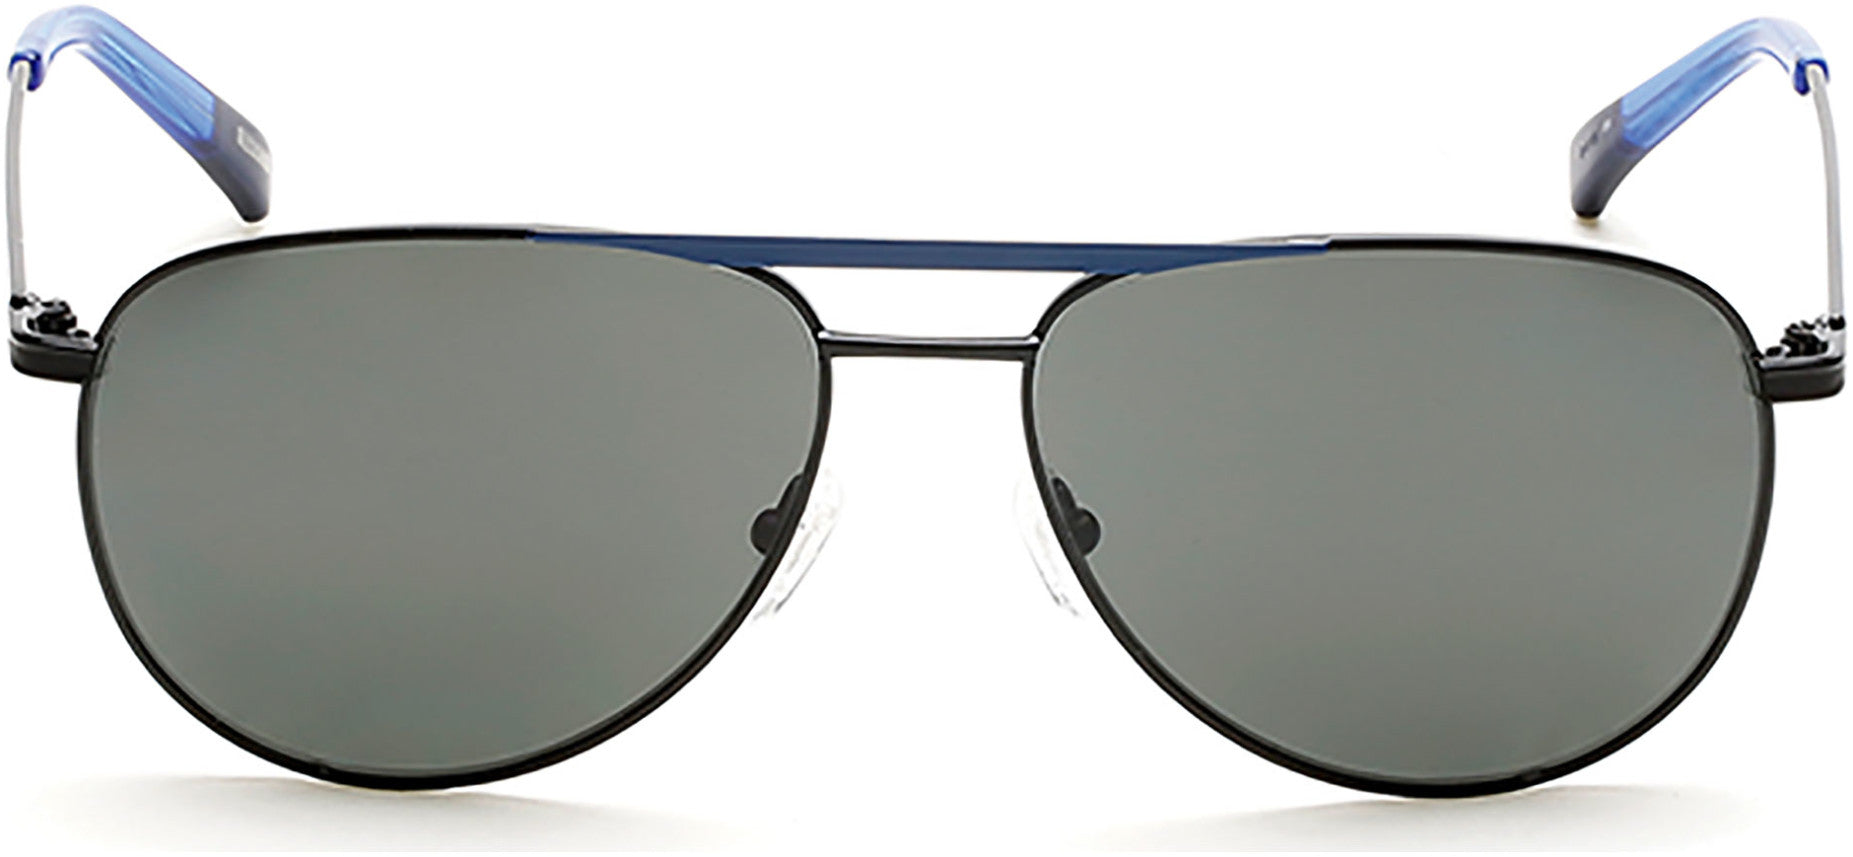 Gant GA7060 Pilot Sunglasses 01D-01D - Shiny Black / Smoke Polarized Lens